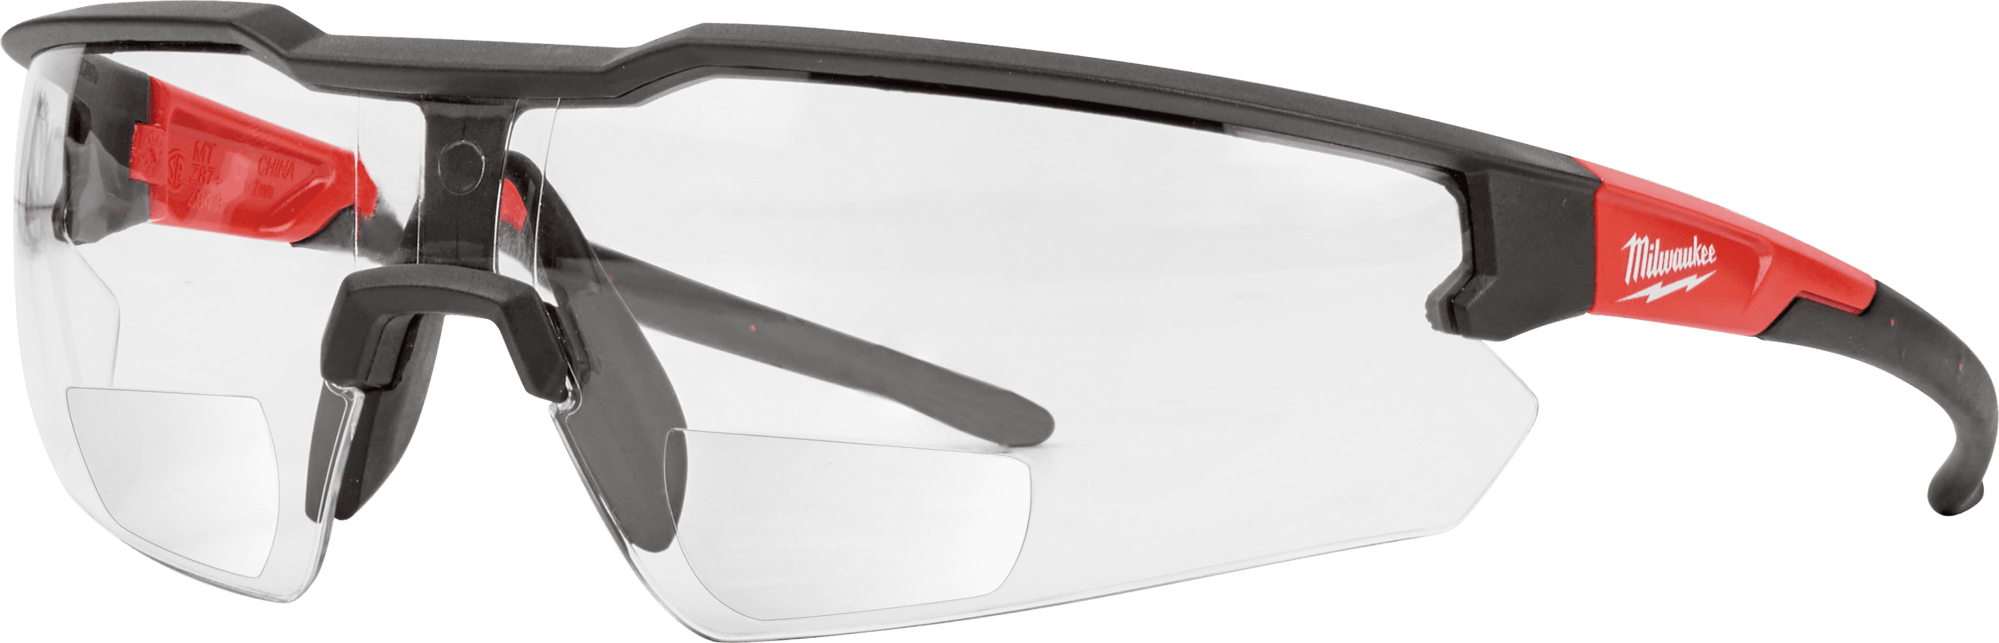 MILWAUKEE BI-FOCAL (+2.0) dioptrické ochranné okuliare s priehľadným sklom